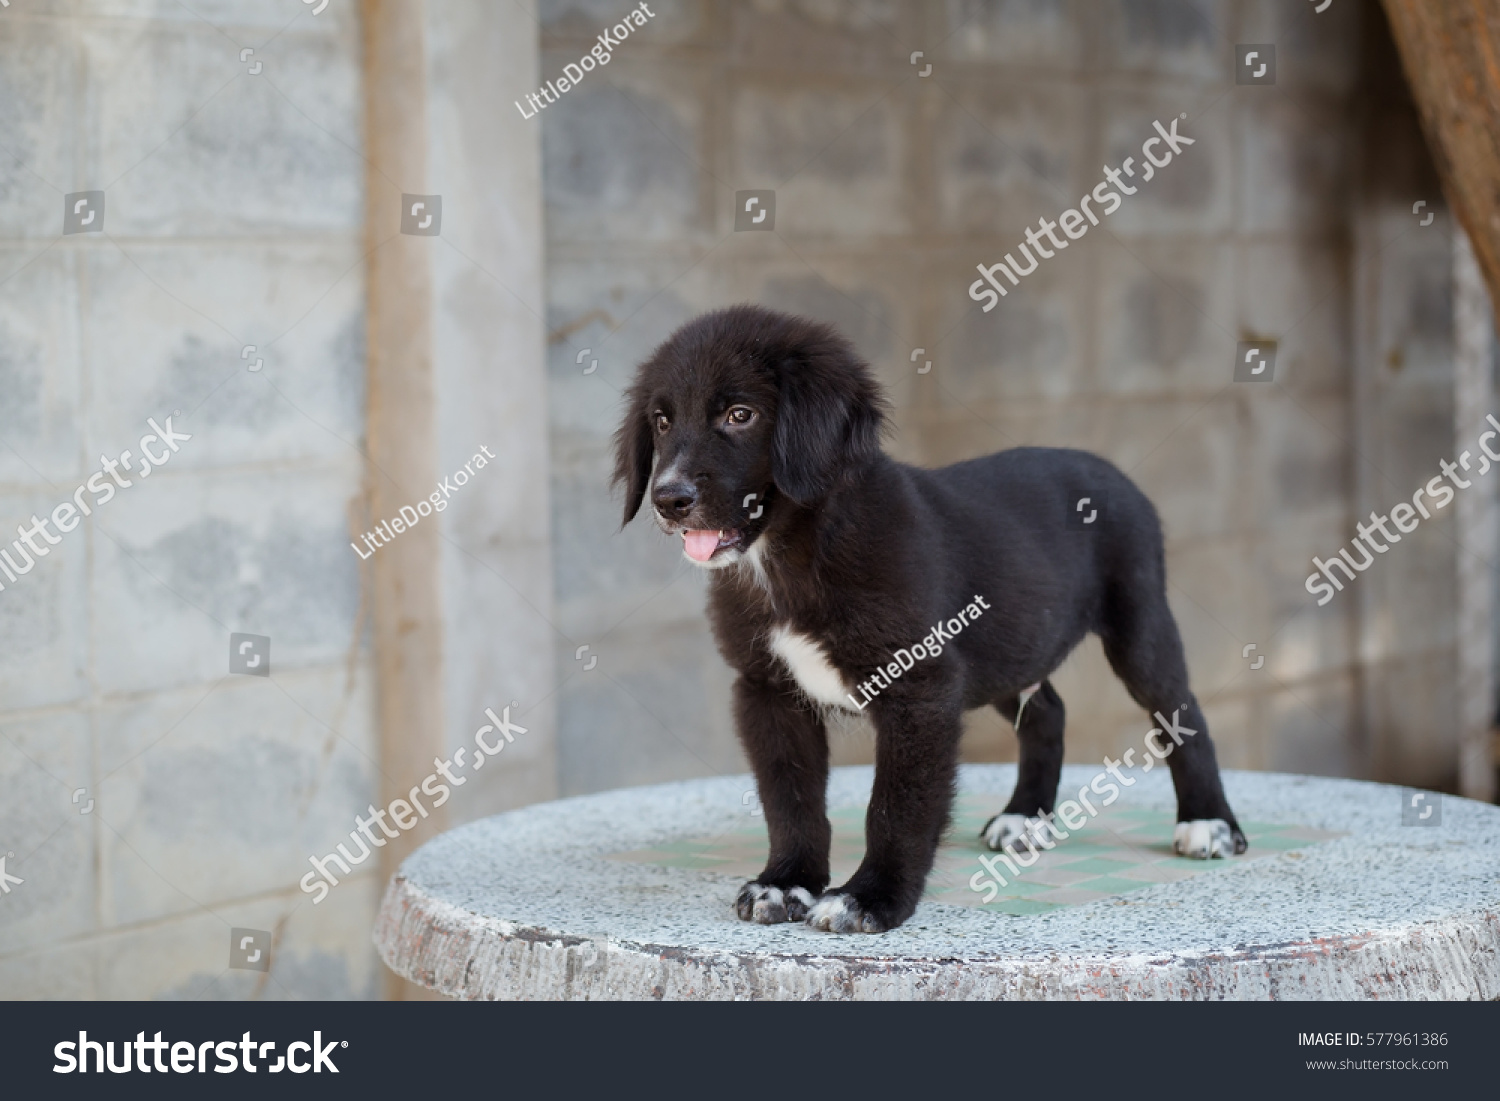 Cute Golden Retriever Mix Labrador Retriever Stock Photo Edit Now 577961386